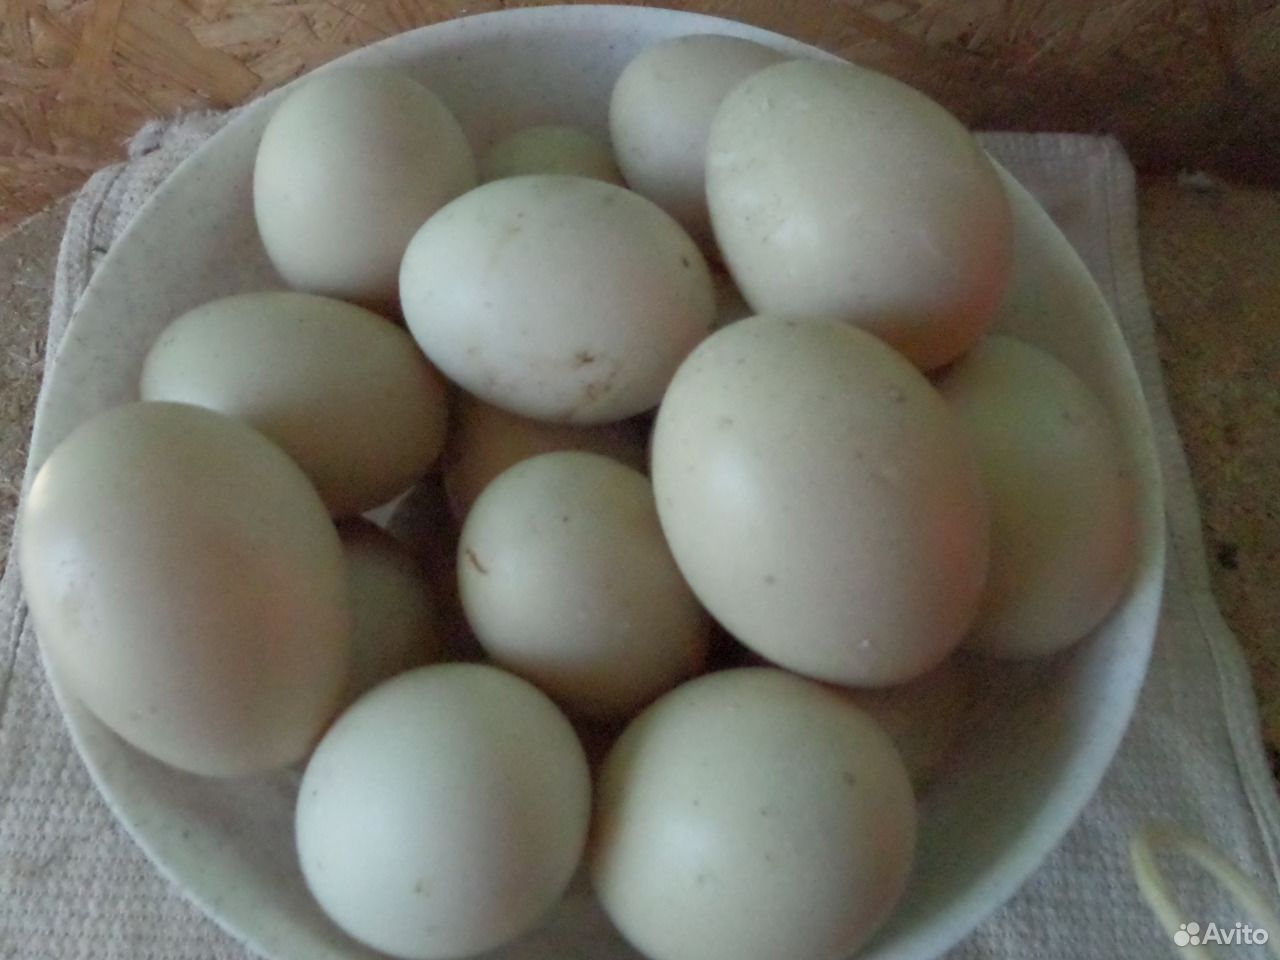 Купить мускусных яйца инкубационные яйца. Инкубационное яйцо индоутки. Яйцо инкубационное голландская белохохлая ВНИИГРЖ. Фото яйца индоутки 10 штук.